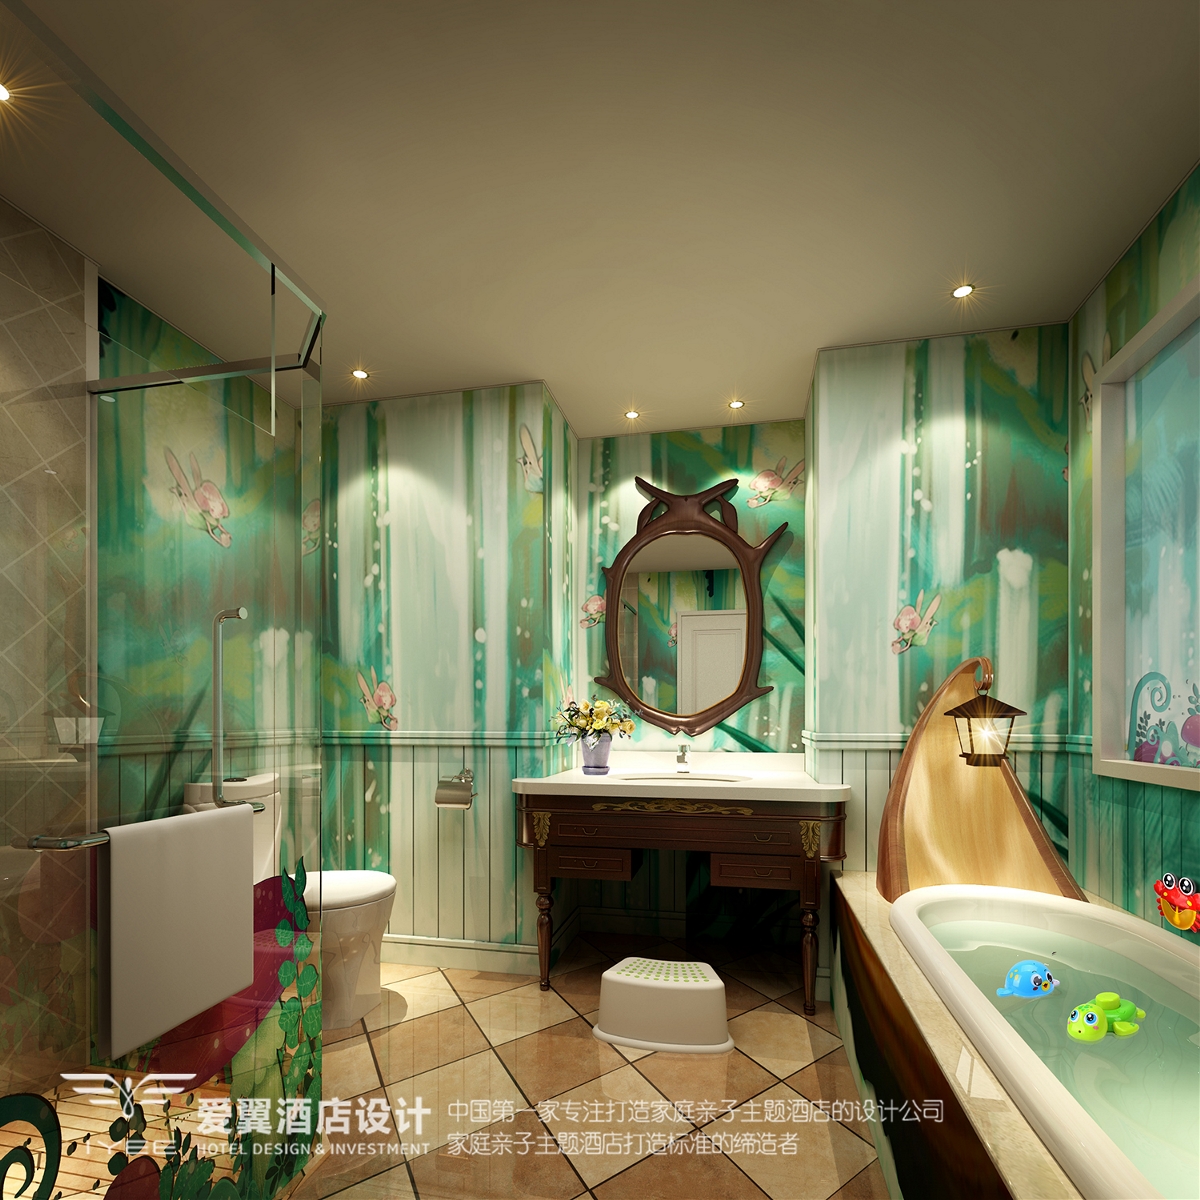 爱翼亲子酒店设计案例分享-杭州宋城第一世界大酒店